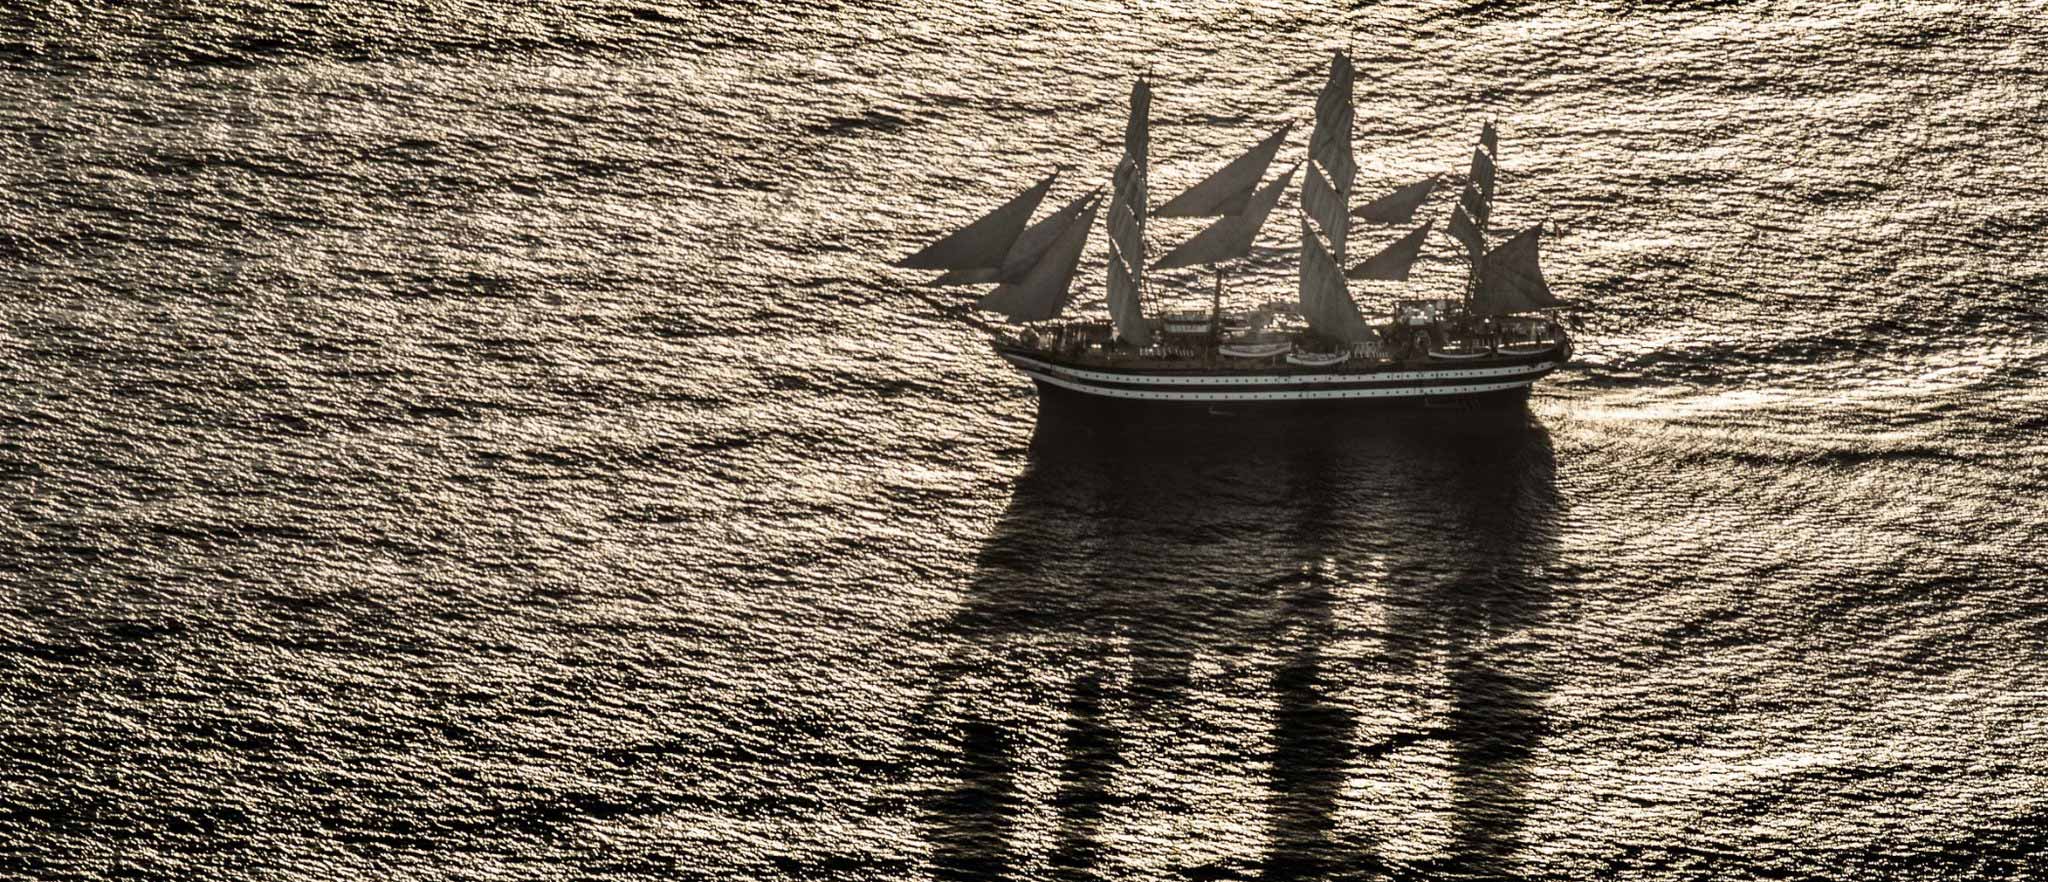 L’Amerigo Vespucci, la nave Italiana più bella del mondo